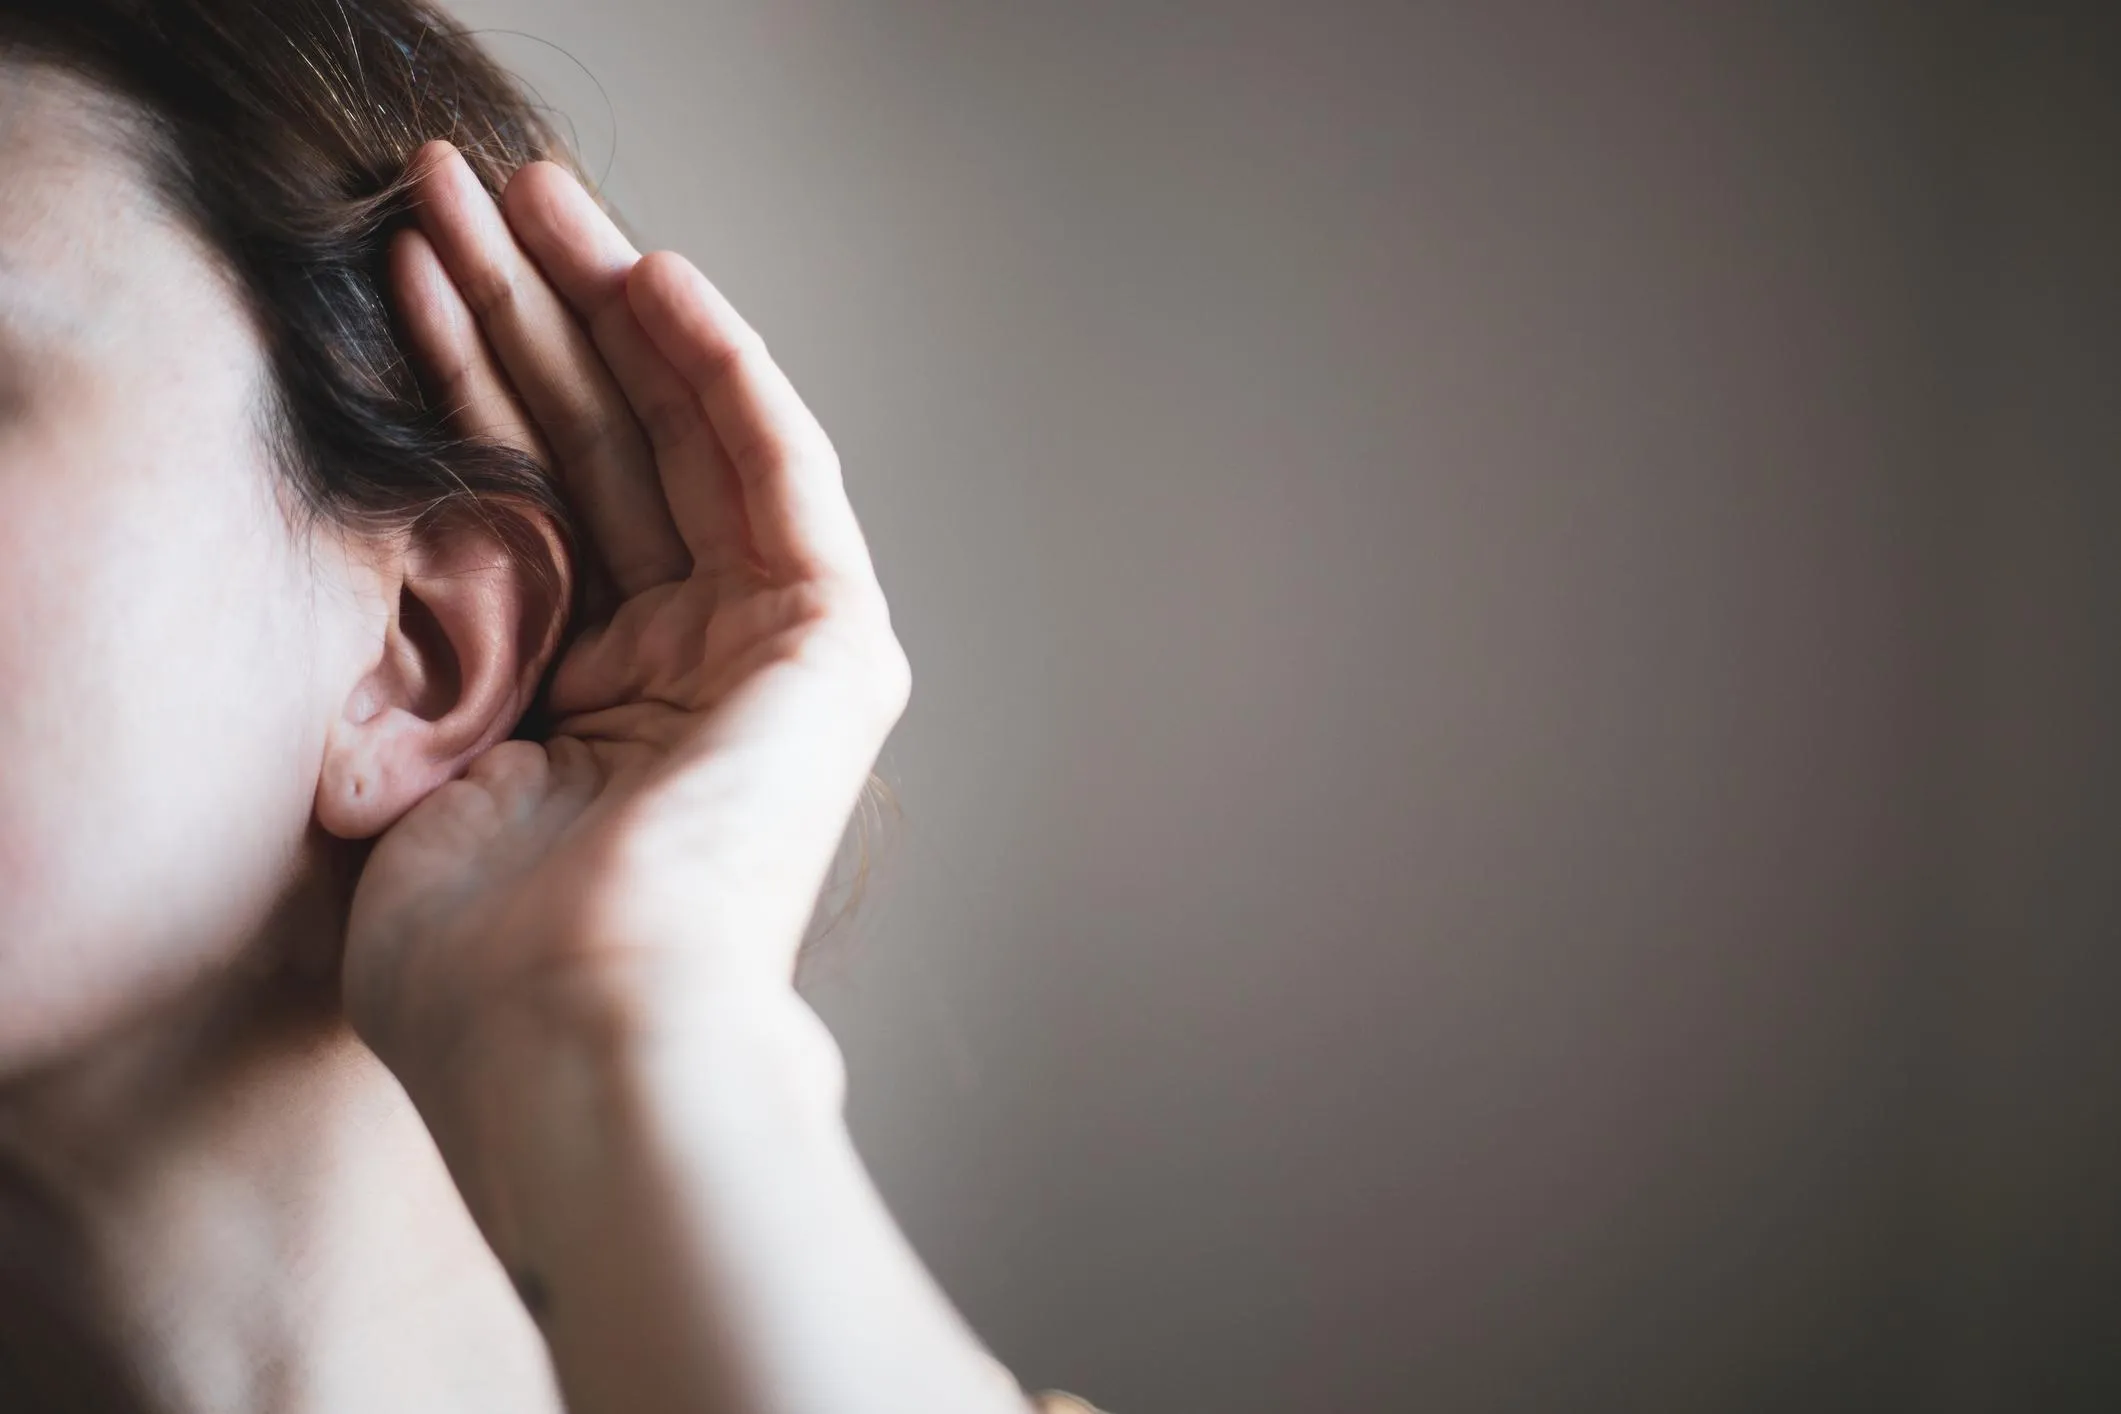 від глухоти і порушень слуху страждають близько 360 мільйонів людей